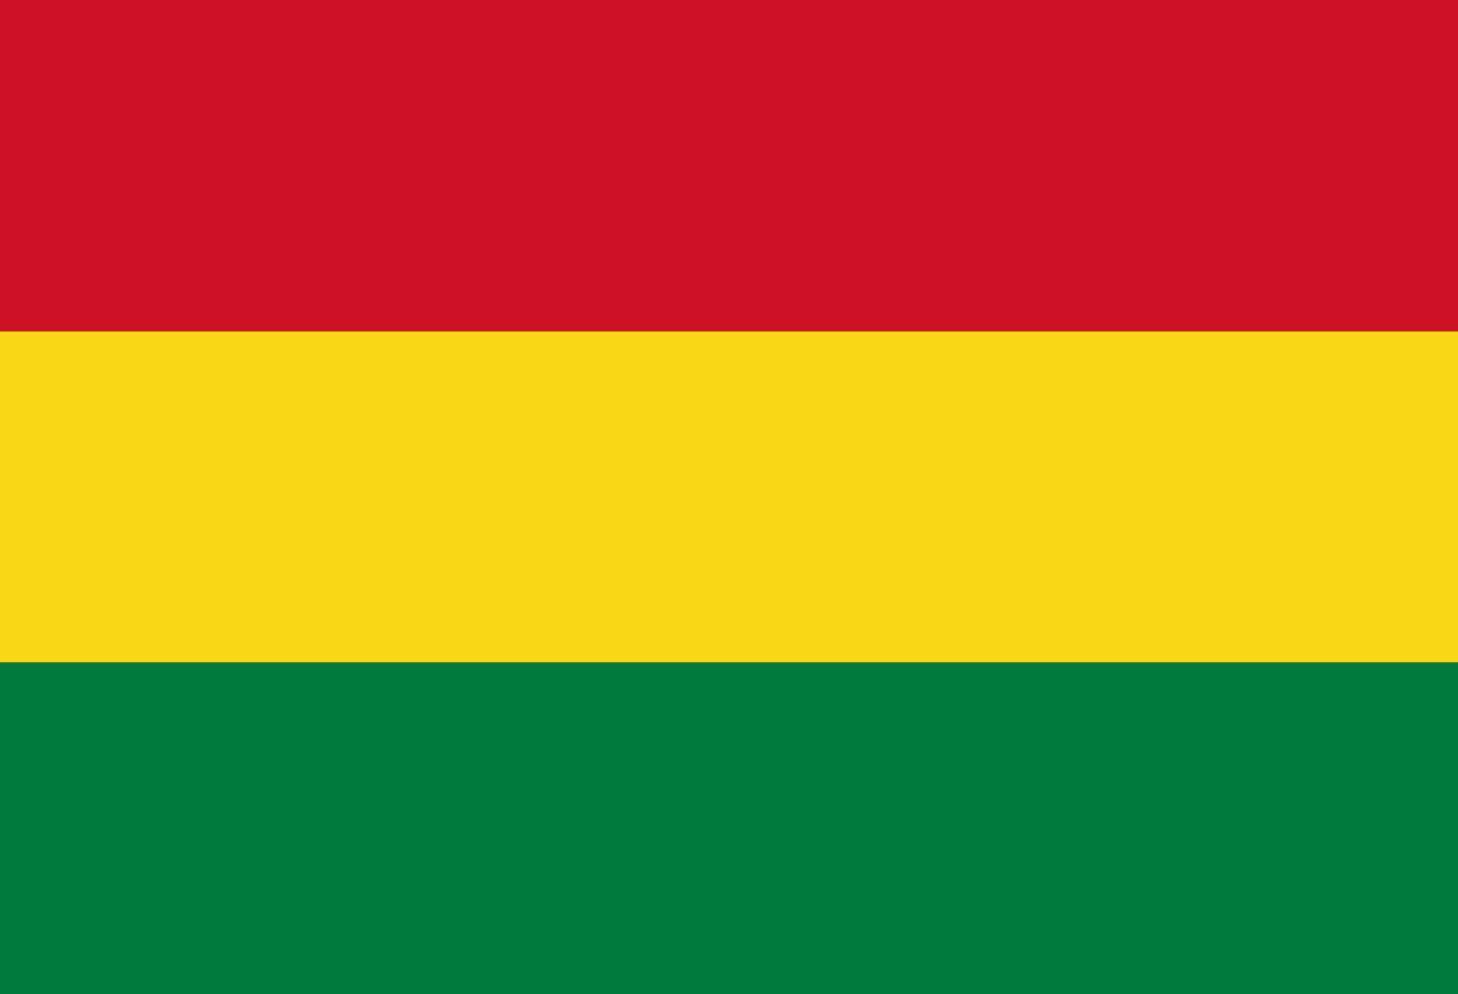 特意又上网搜了一下非洲各国的国旗,在一片红绿黄的轰炸之下,又找出了